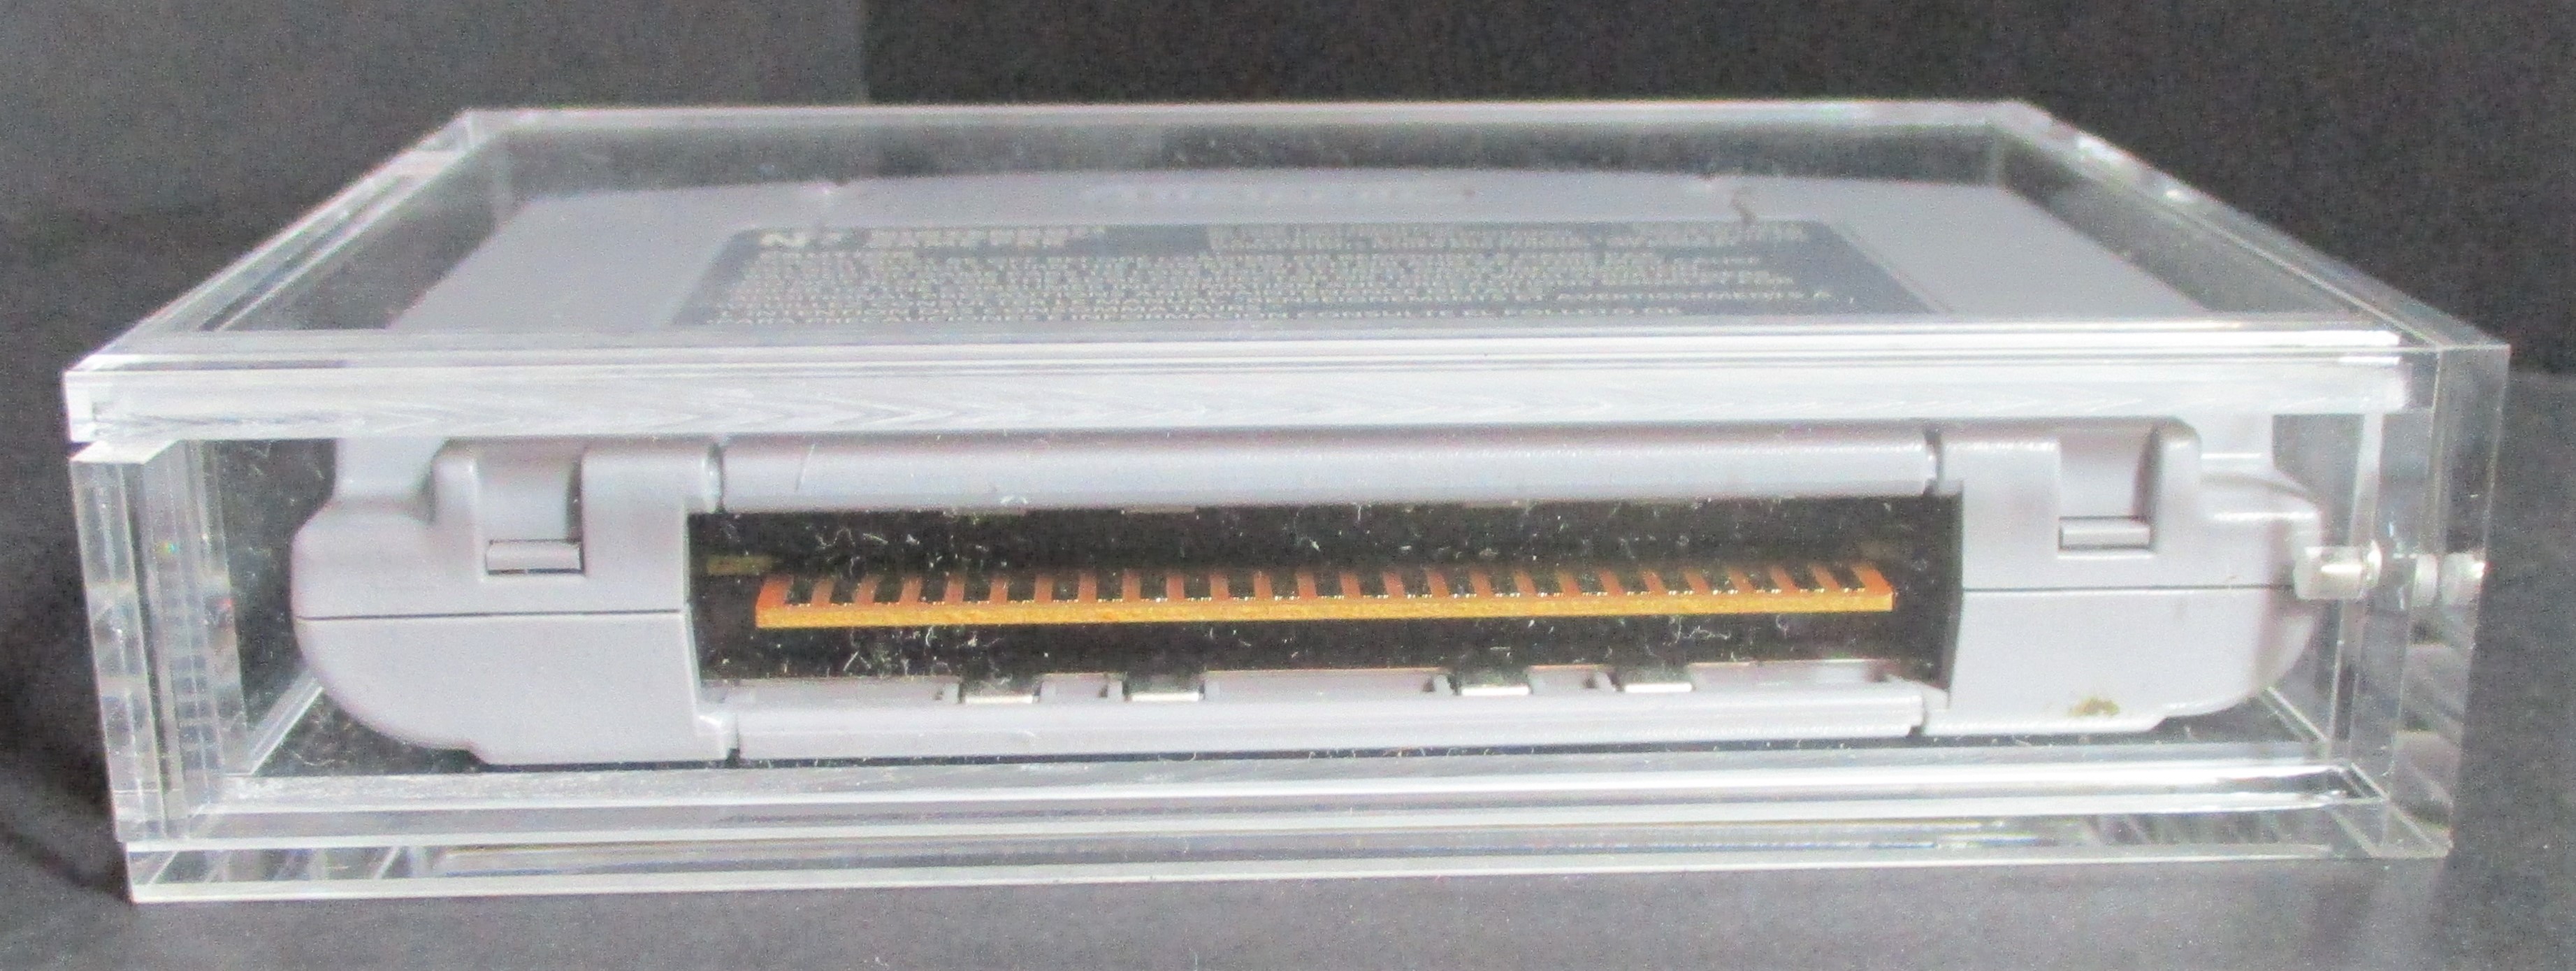 N-64 Loose Cartridge Acrylic Display Guard (60034)